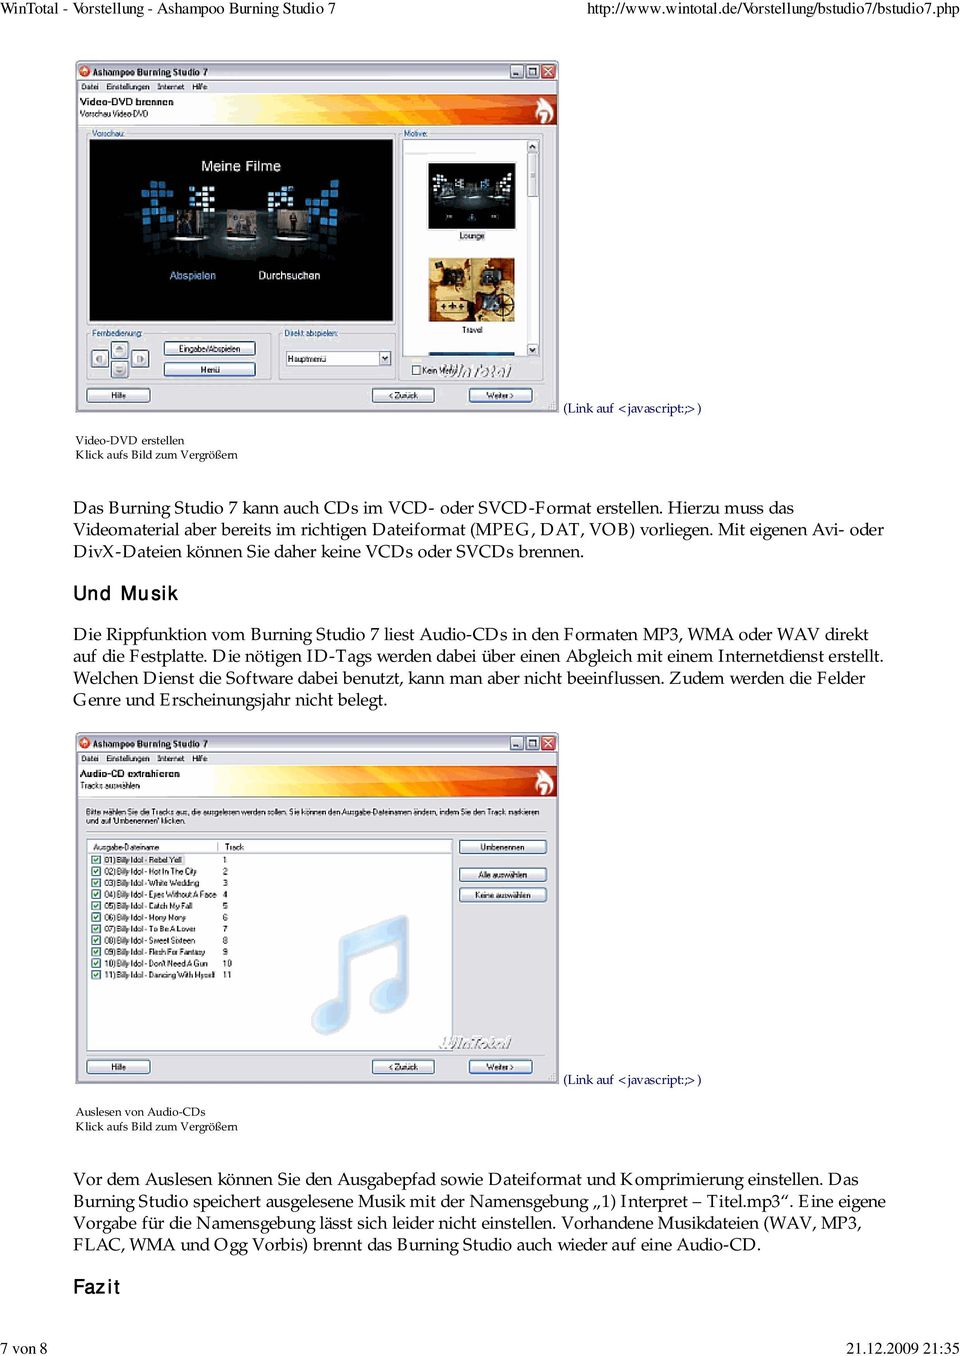 Und Musik Die Rippfunktion vom Burning Studio 7 liest Audio-CDs in den Formaten MP3, WMA oder WAV direkt auf die Festplatte.